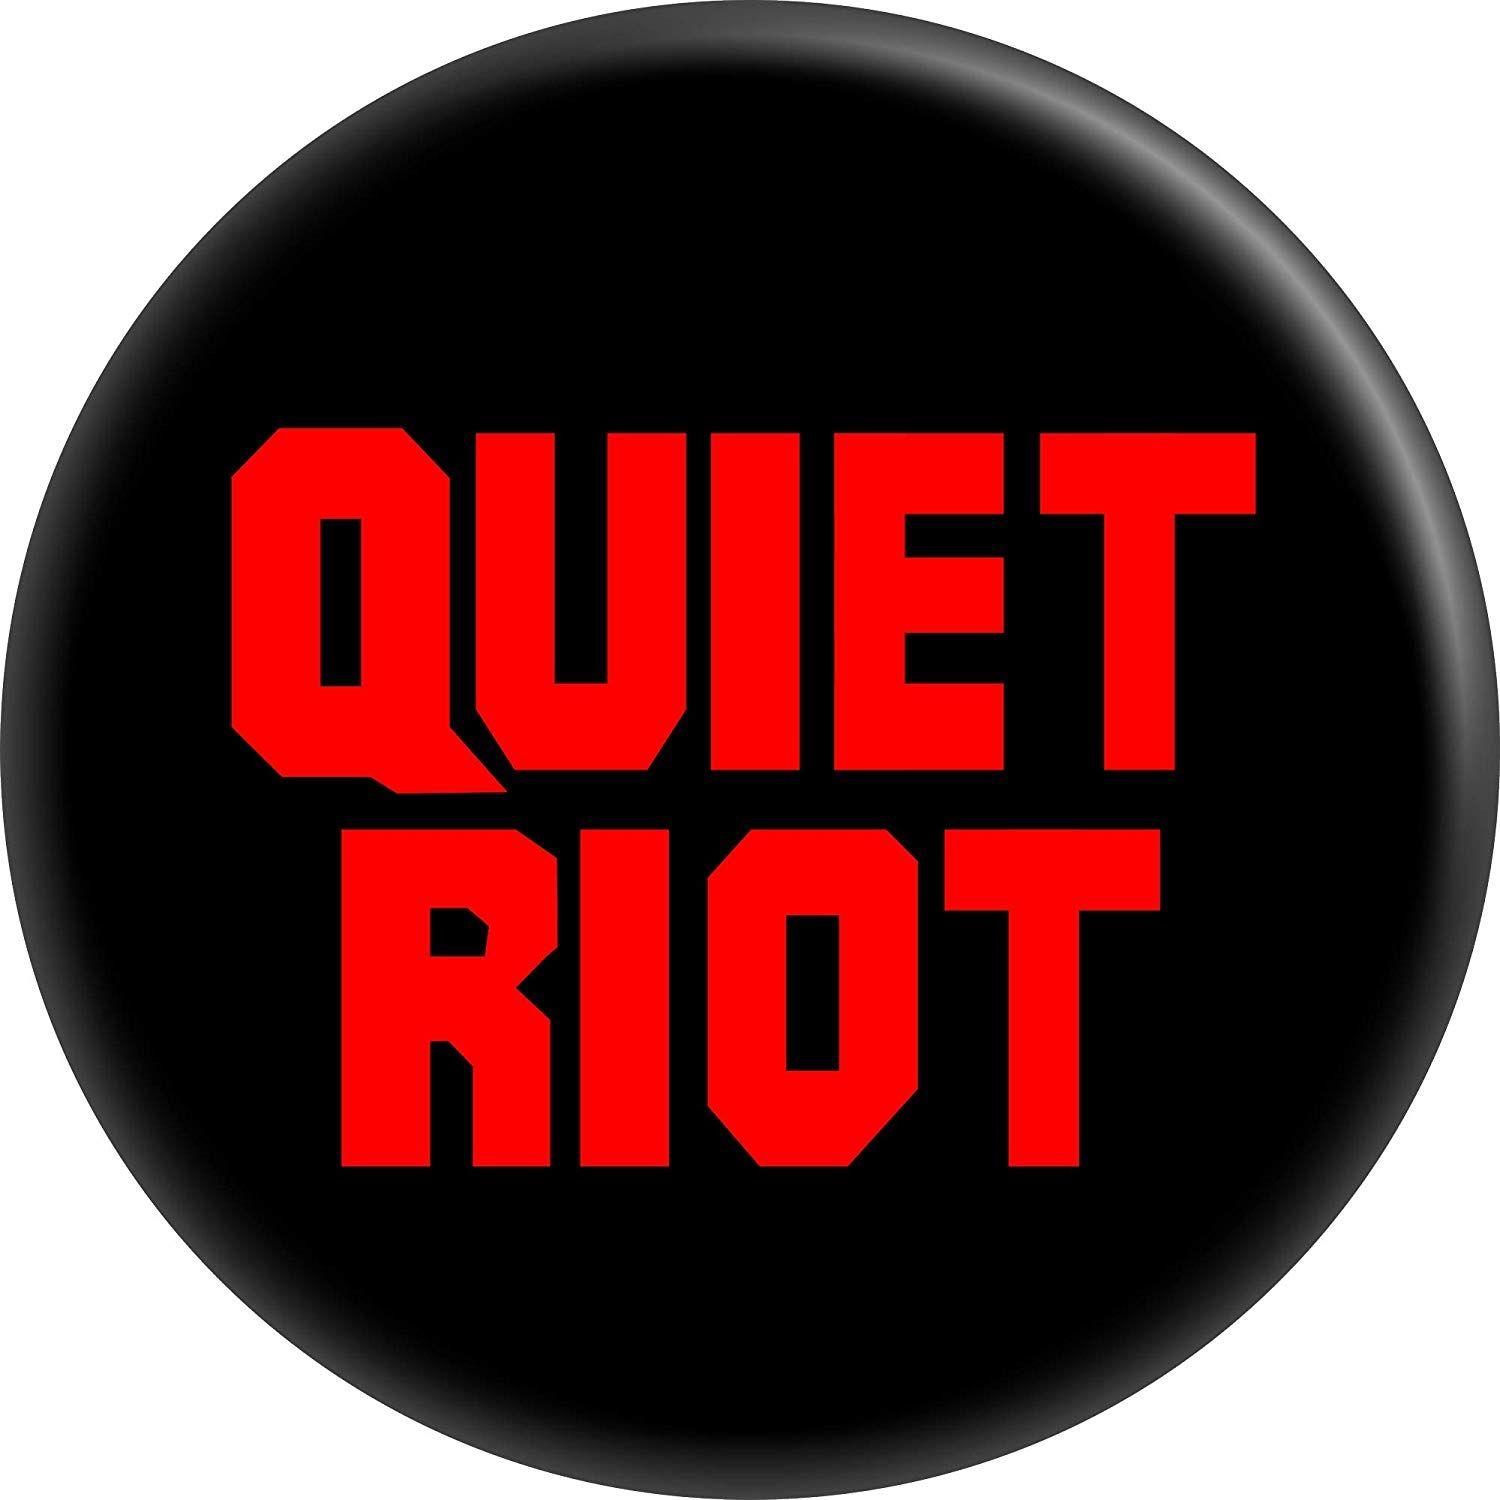 Quiet Riot Logo - Amazon.com: Quiet Riot - Logo (Black, Red and White) - 1 1/4